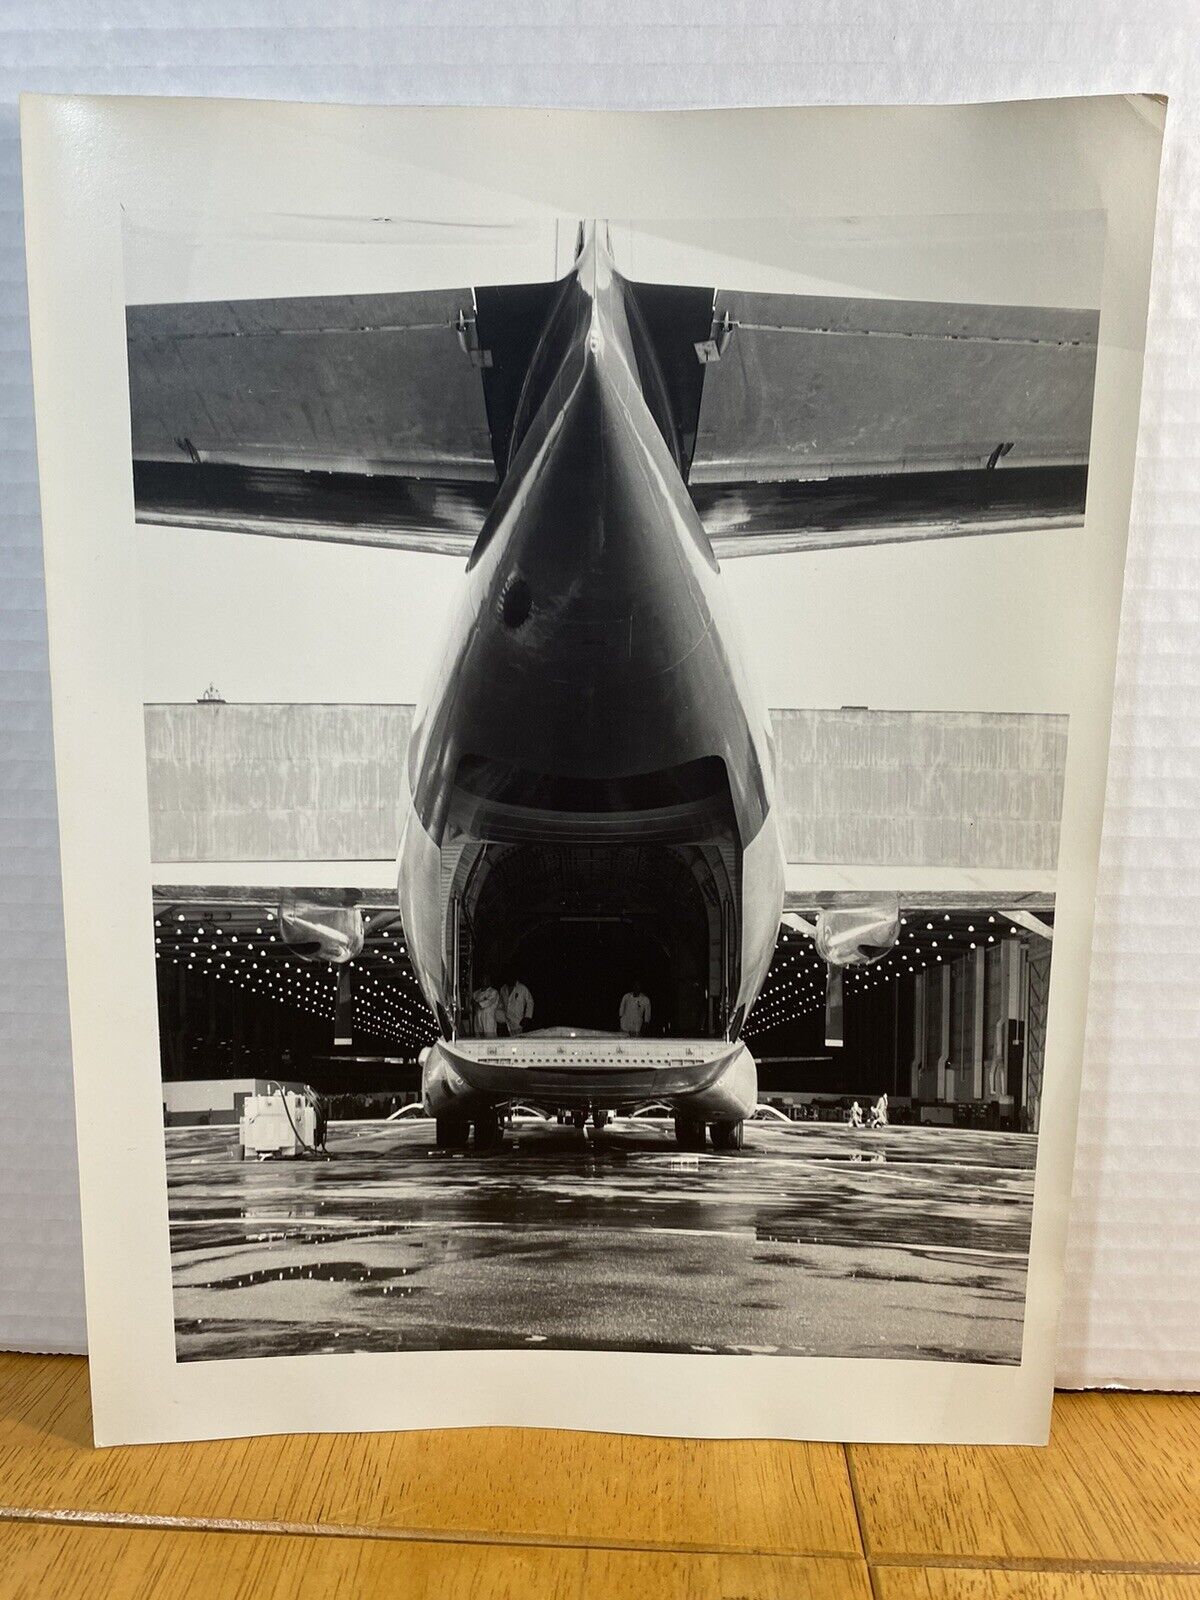 Douglas C-133 Cargomaster Cargo Aircraft U.S.A.F - A.F Serial No. 54-135A VTG